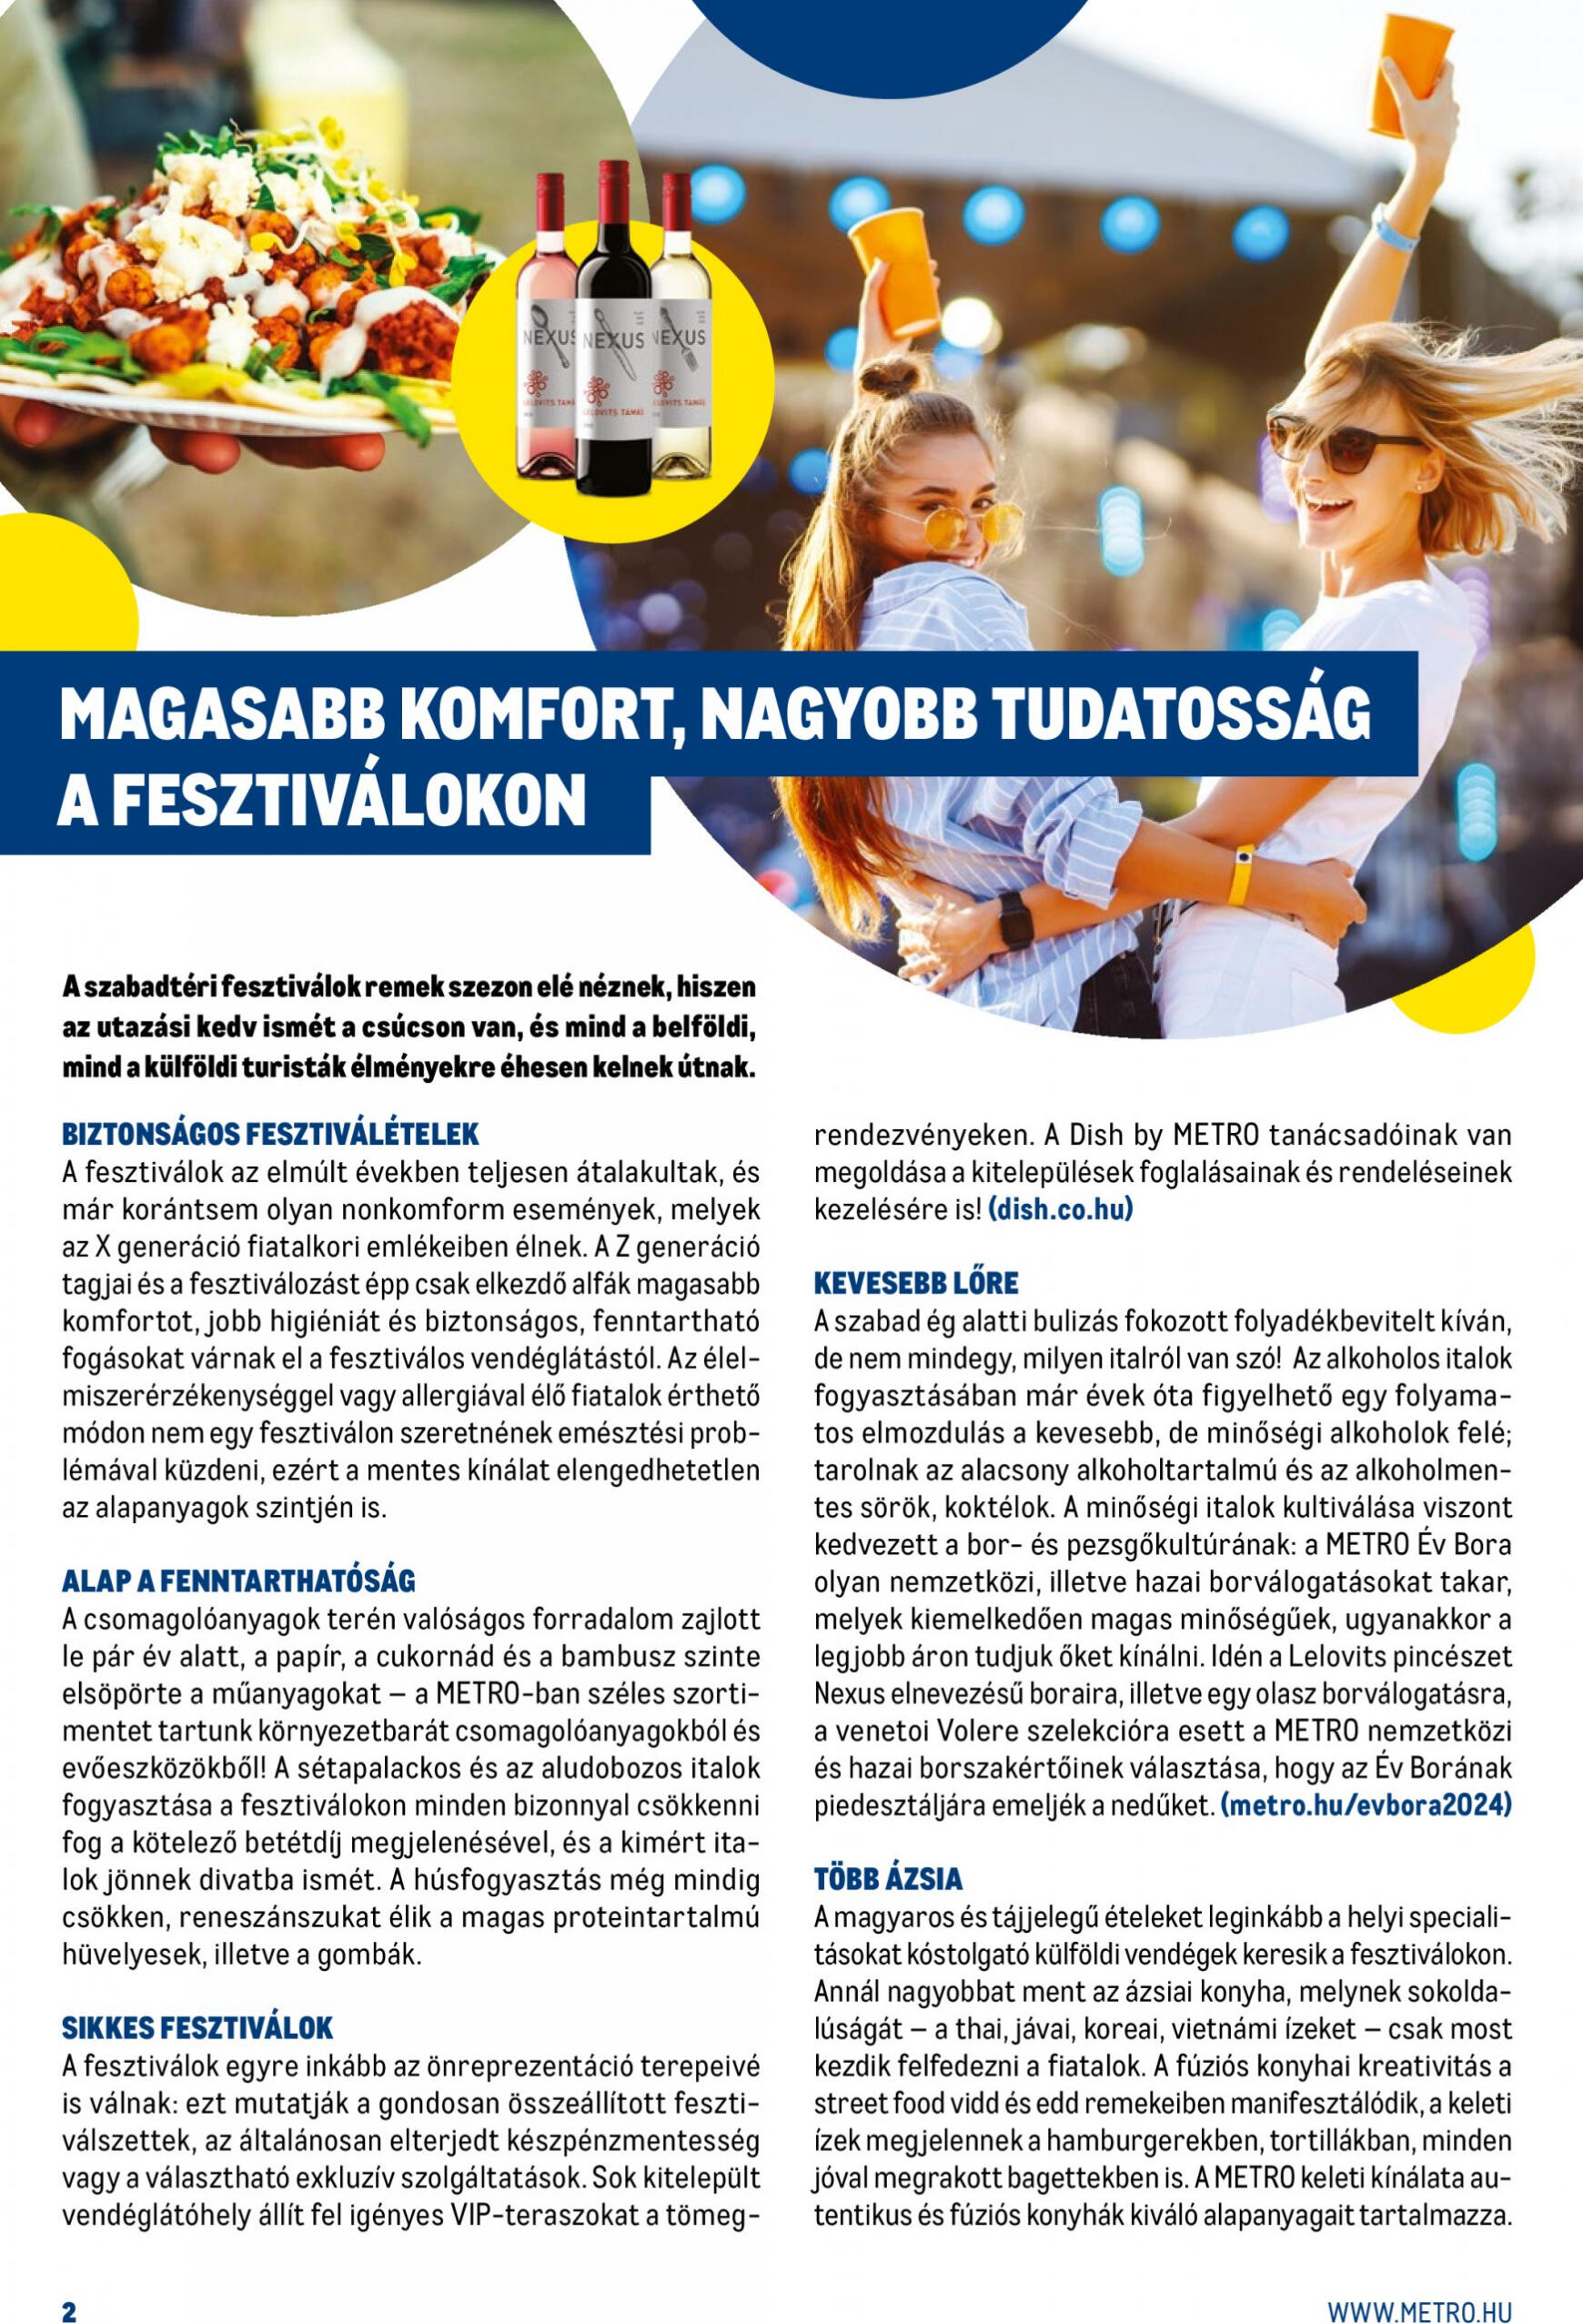 metro - Aktuális újság Metro - Gasztro magazin 05.02. - 05.31. - page: 2